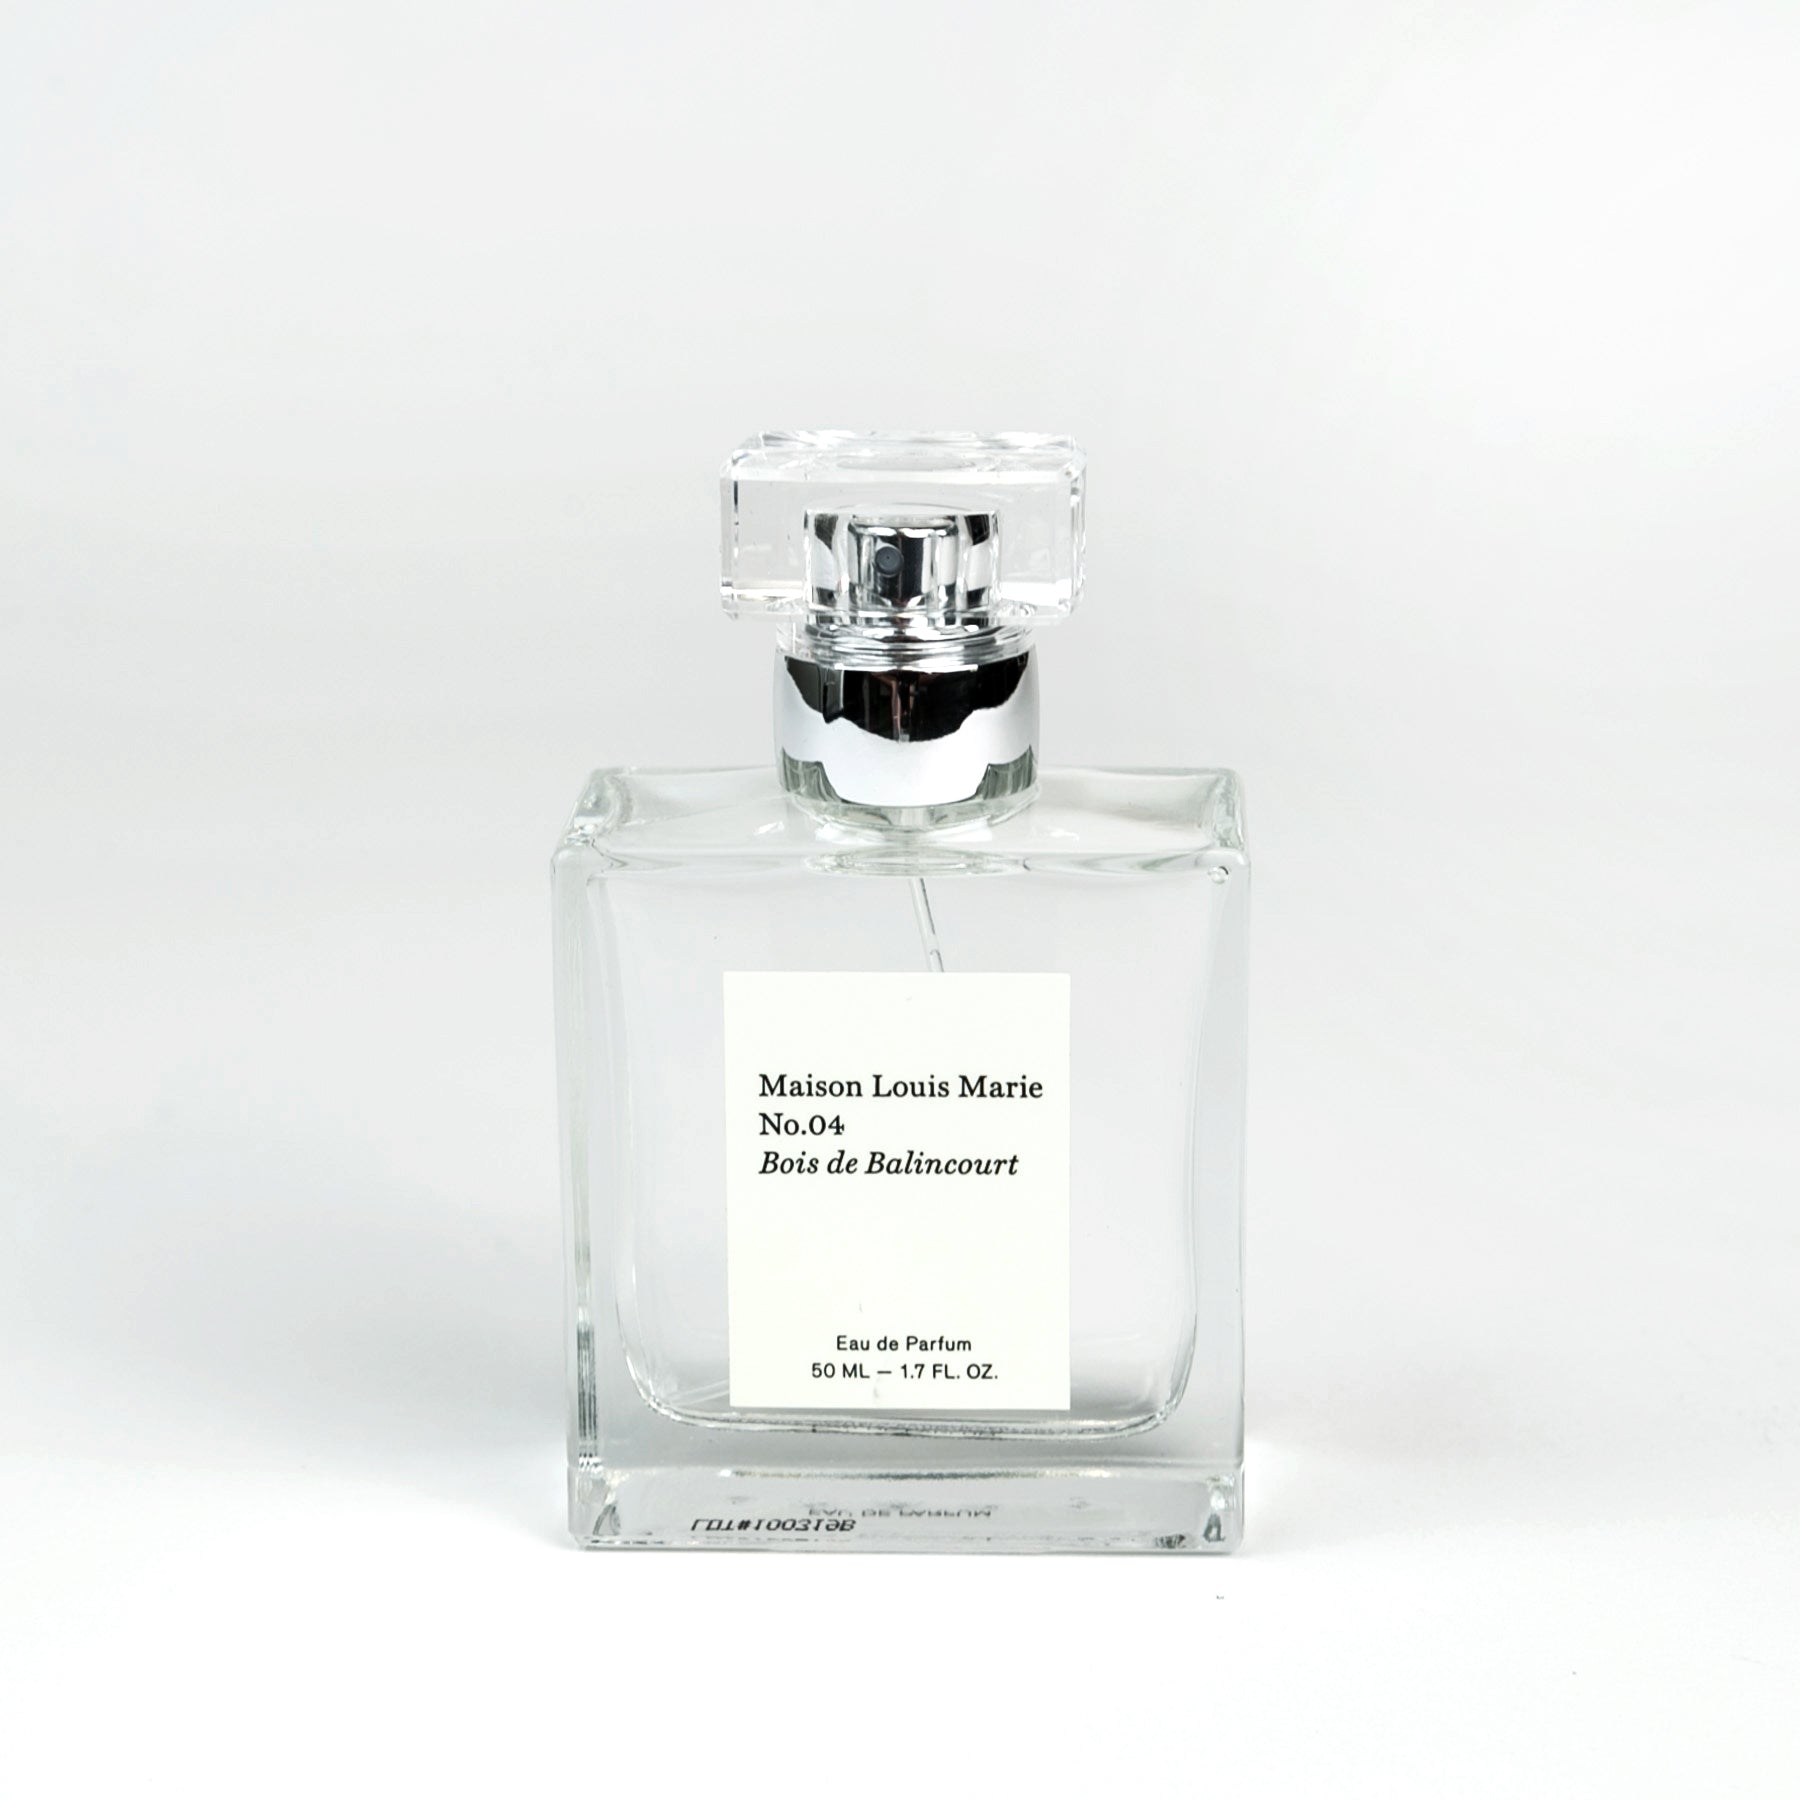 Maison Louis Marie No.04 Bois De Balincourt Eau De Parfum In 1.7 Fl oz